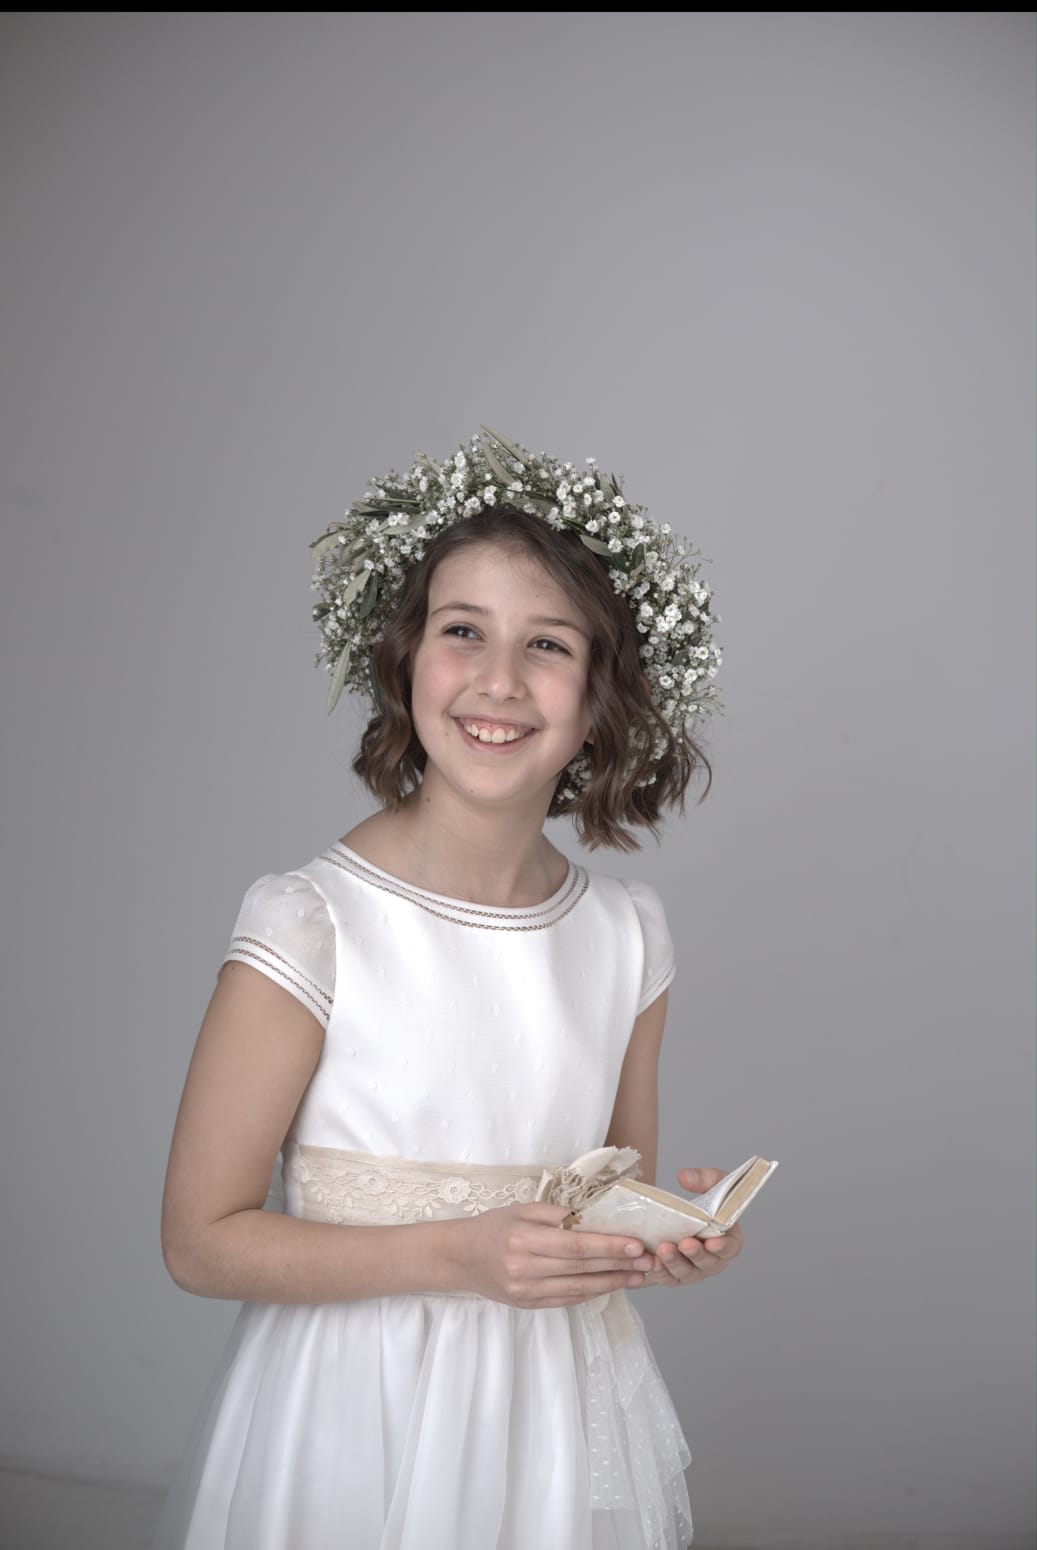 Fotografía de una niña de comunión sujetando una libreta y sonriendo